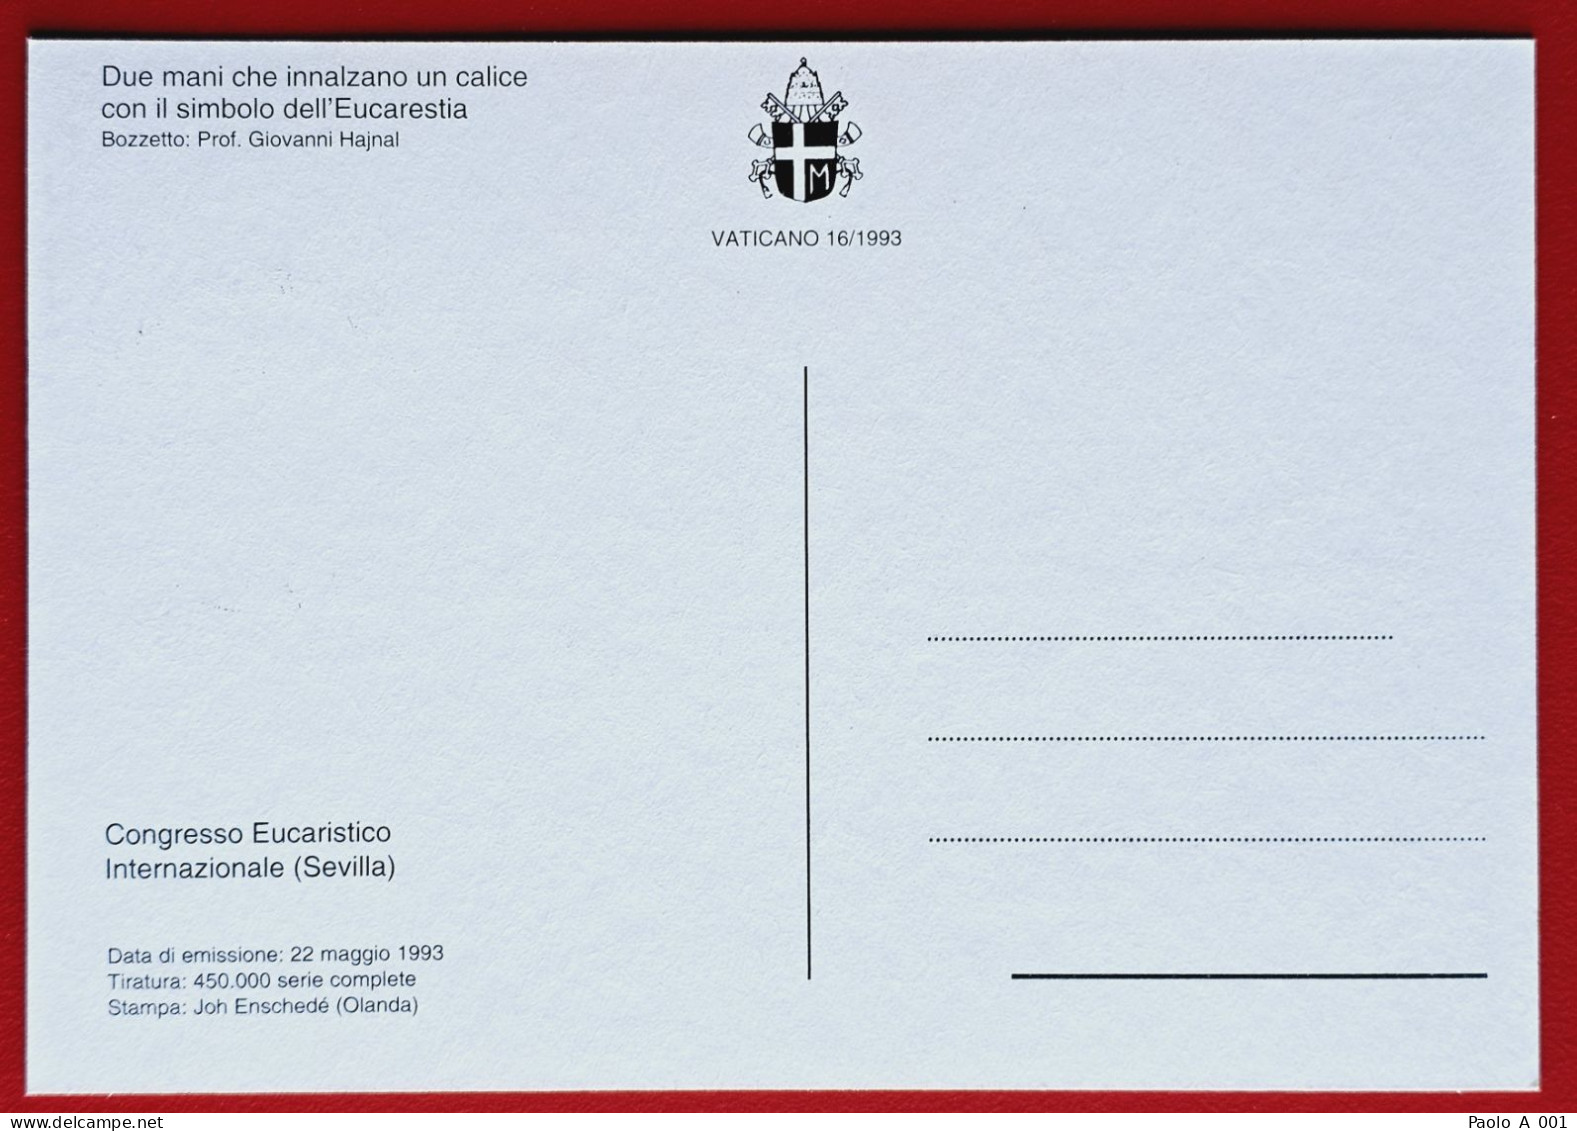 VATICANO VATIKAN VATICAN 1993 CONGRESSO EUCARISTICO SEVILLA MAXIMUM CARD - Covers & Documents